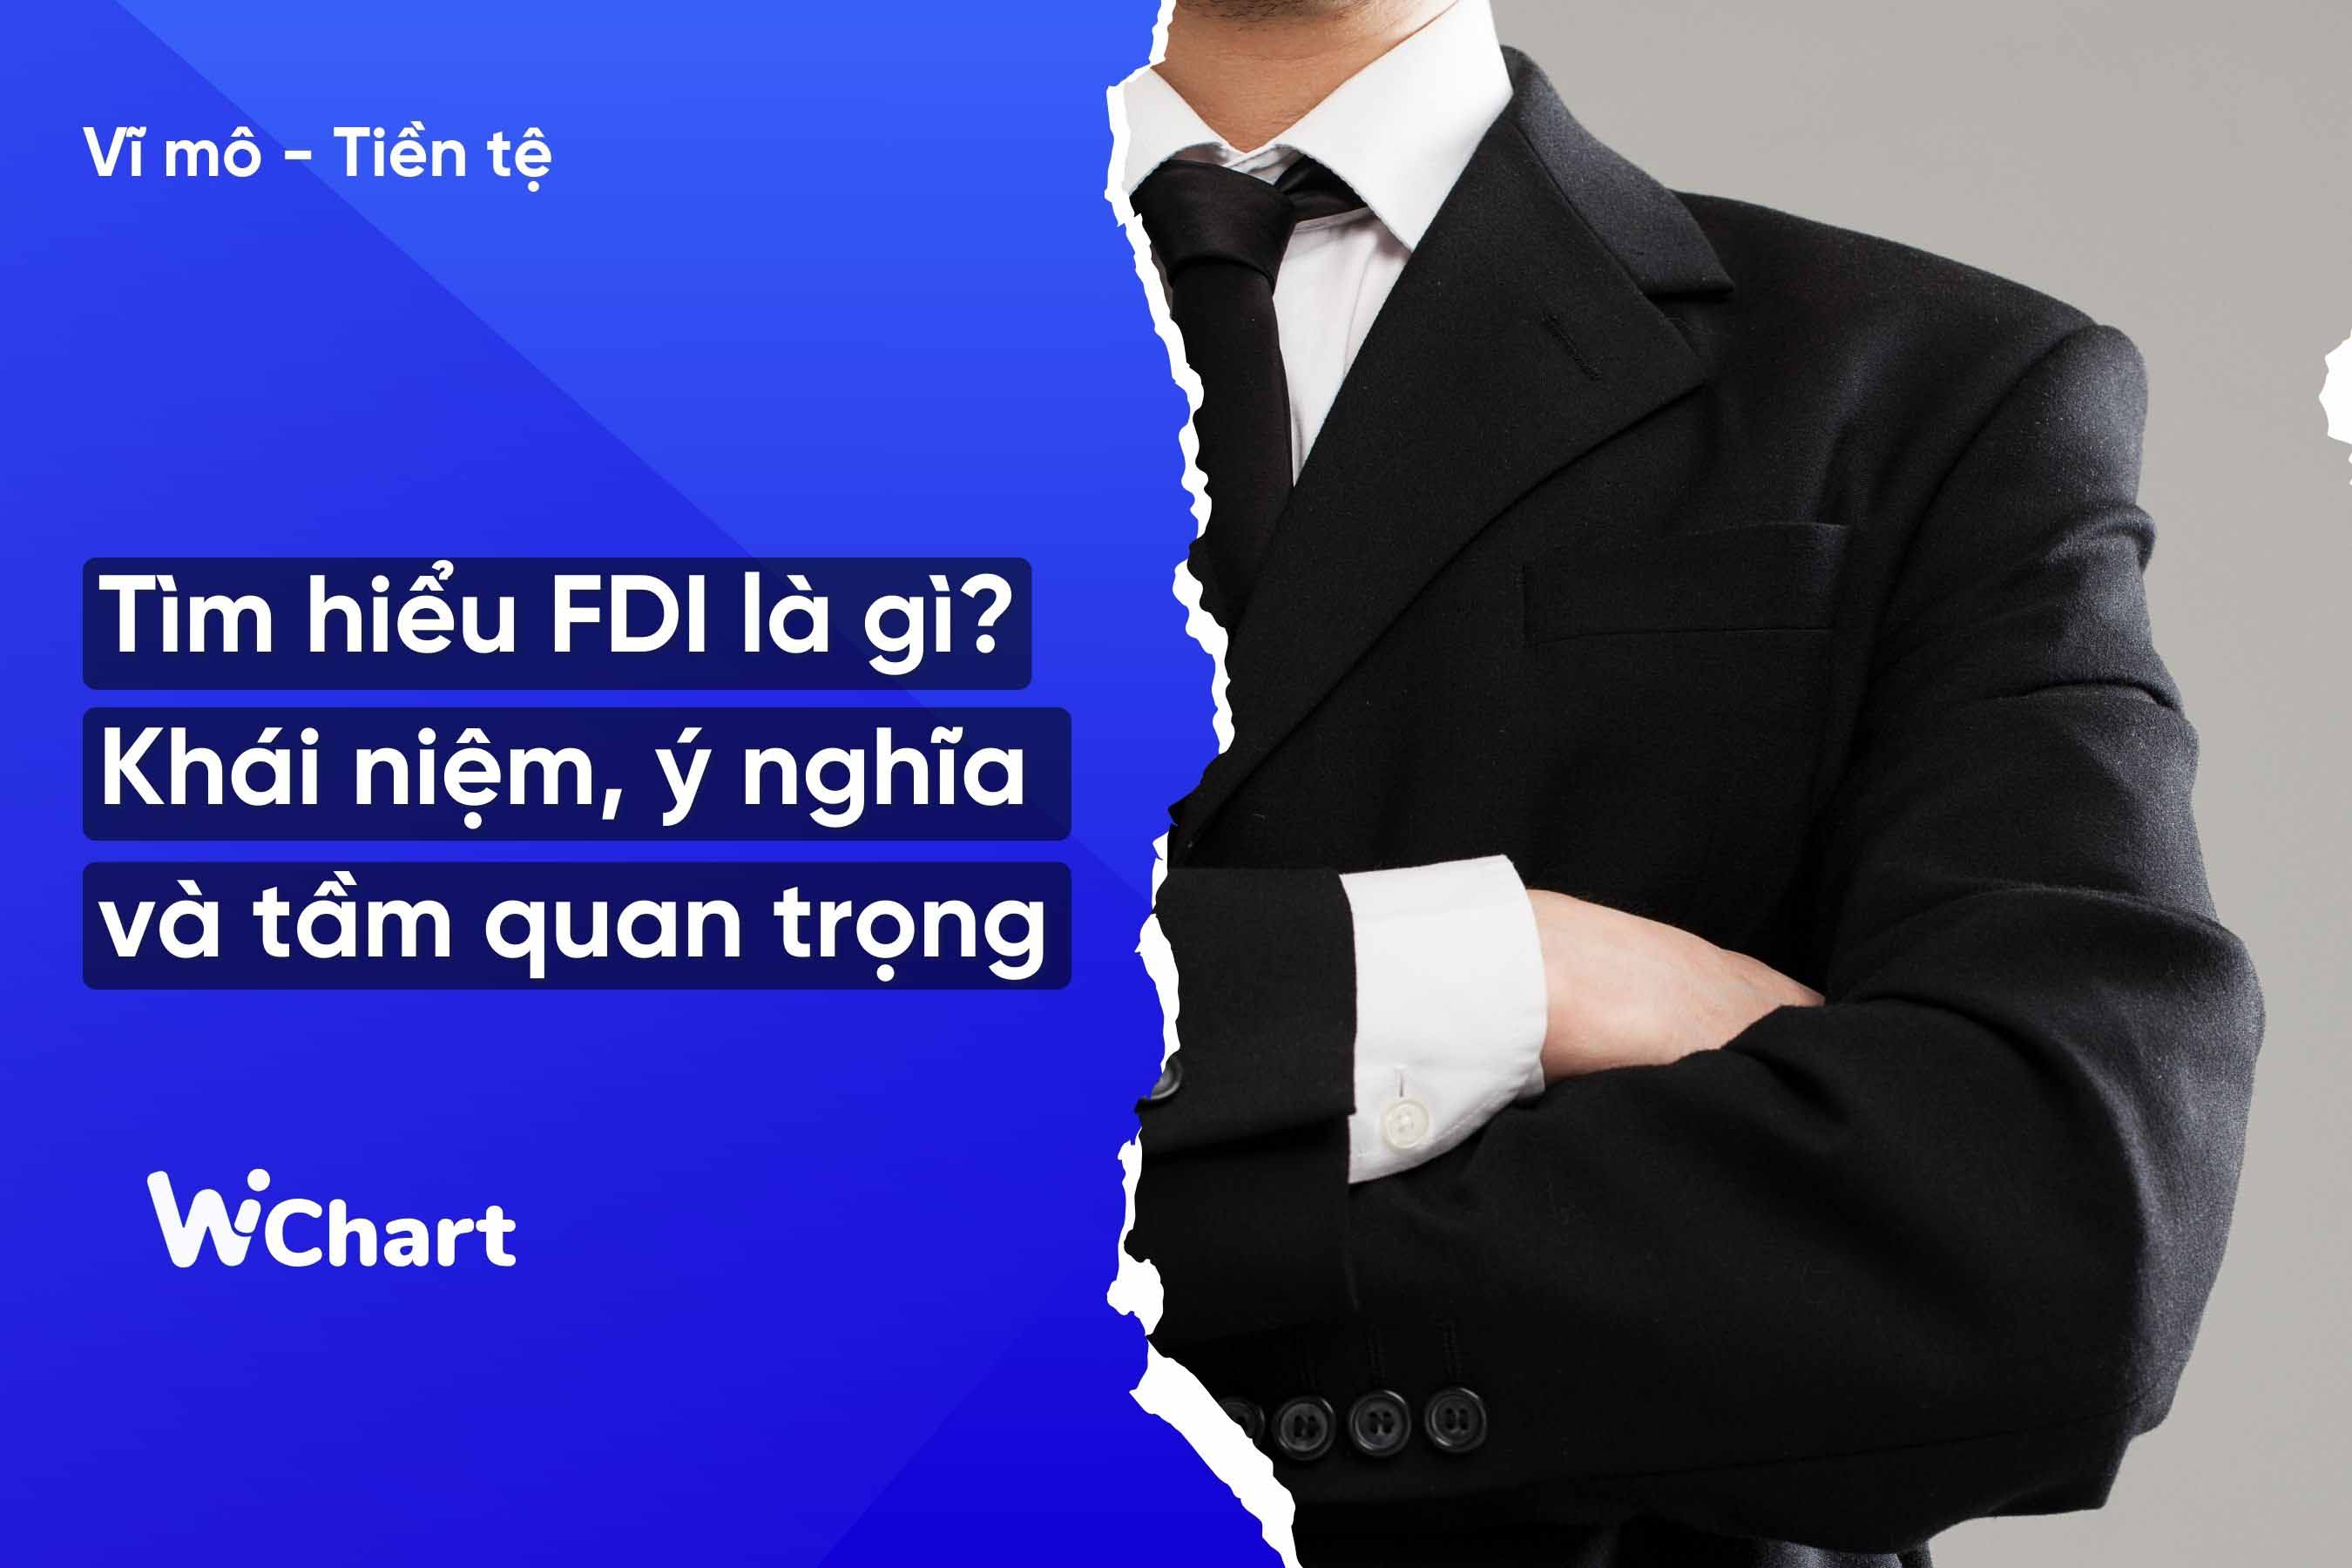 Tìm hiểu FDI là gì? Khái niệm, ý nghĩa và tầm quan trọng